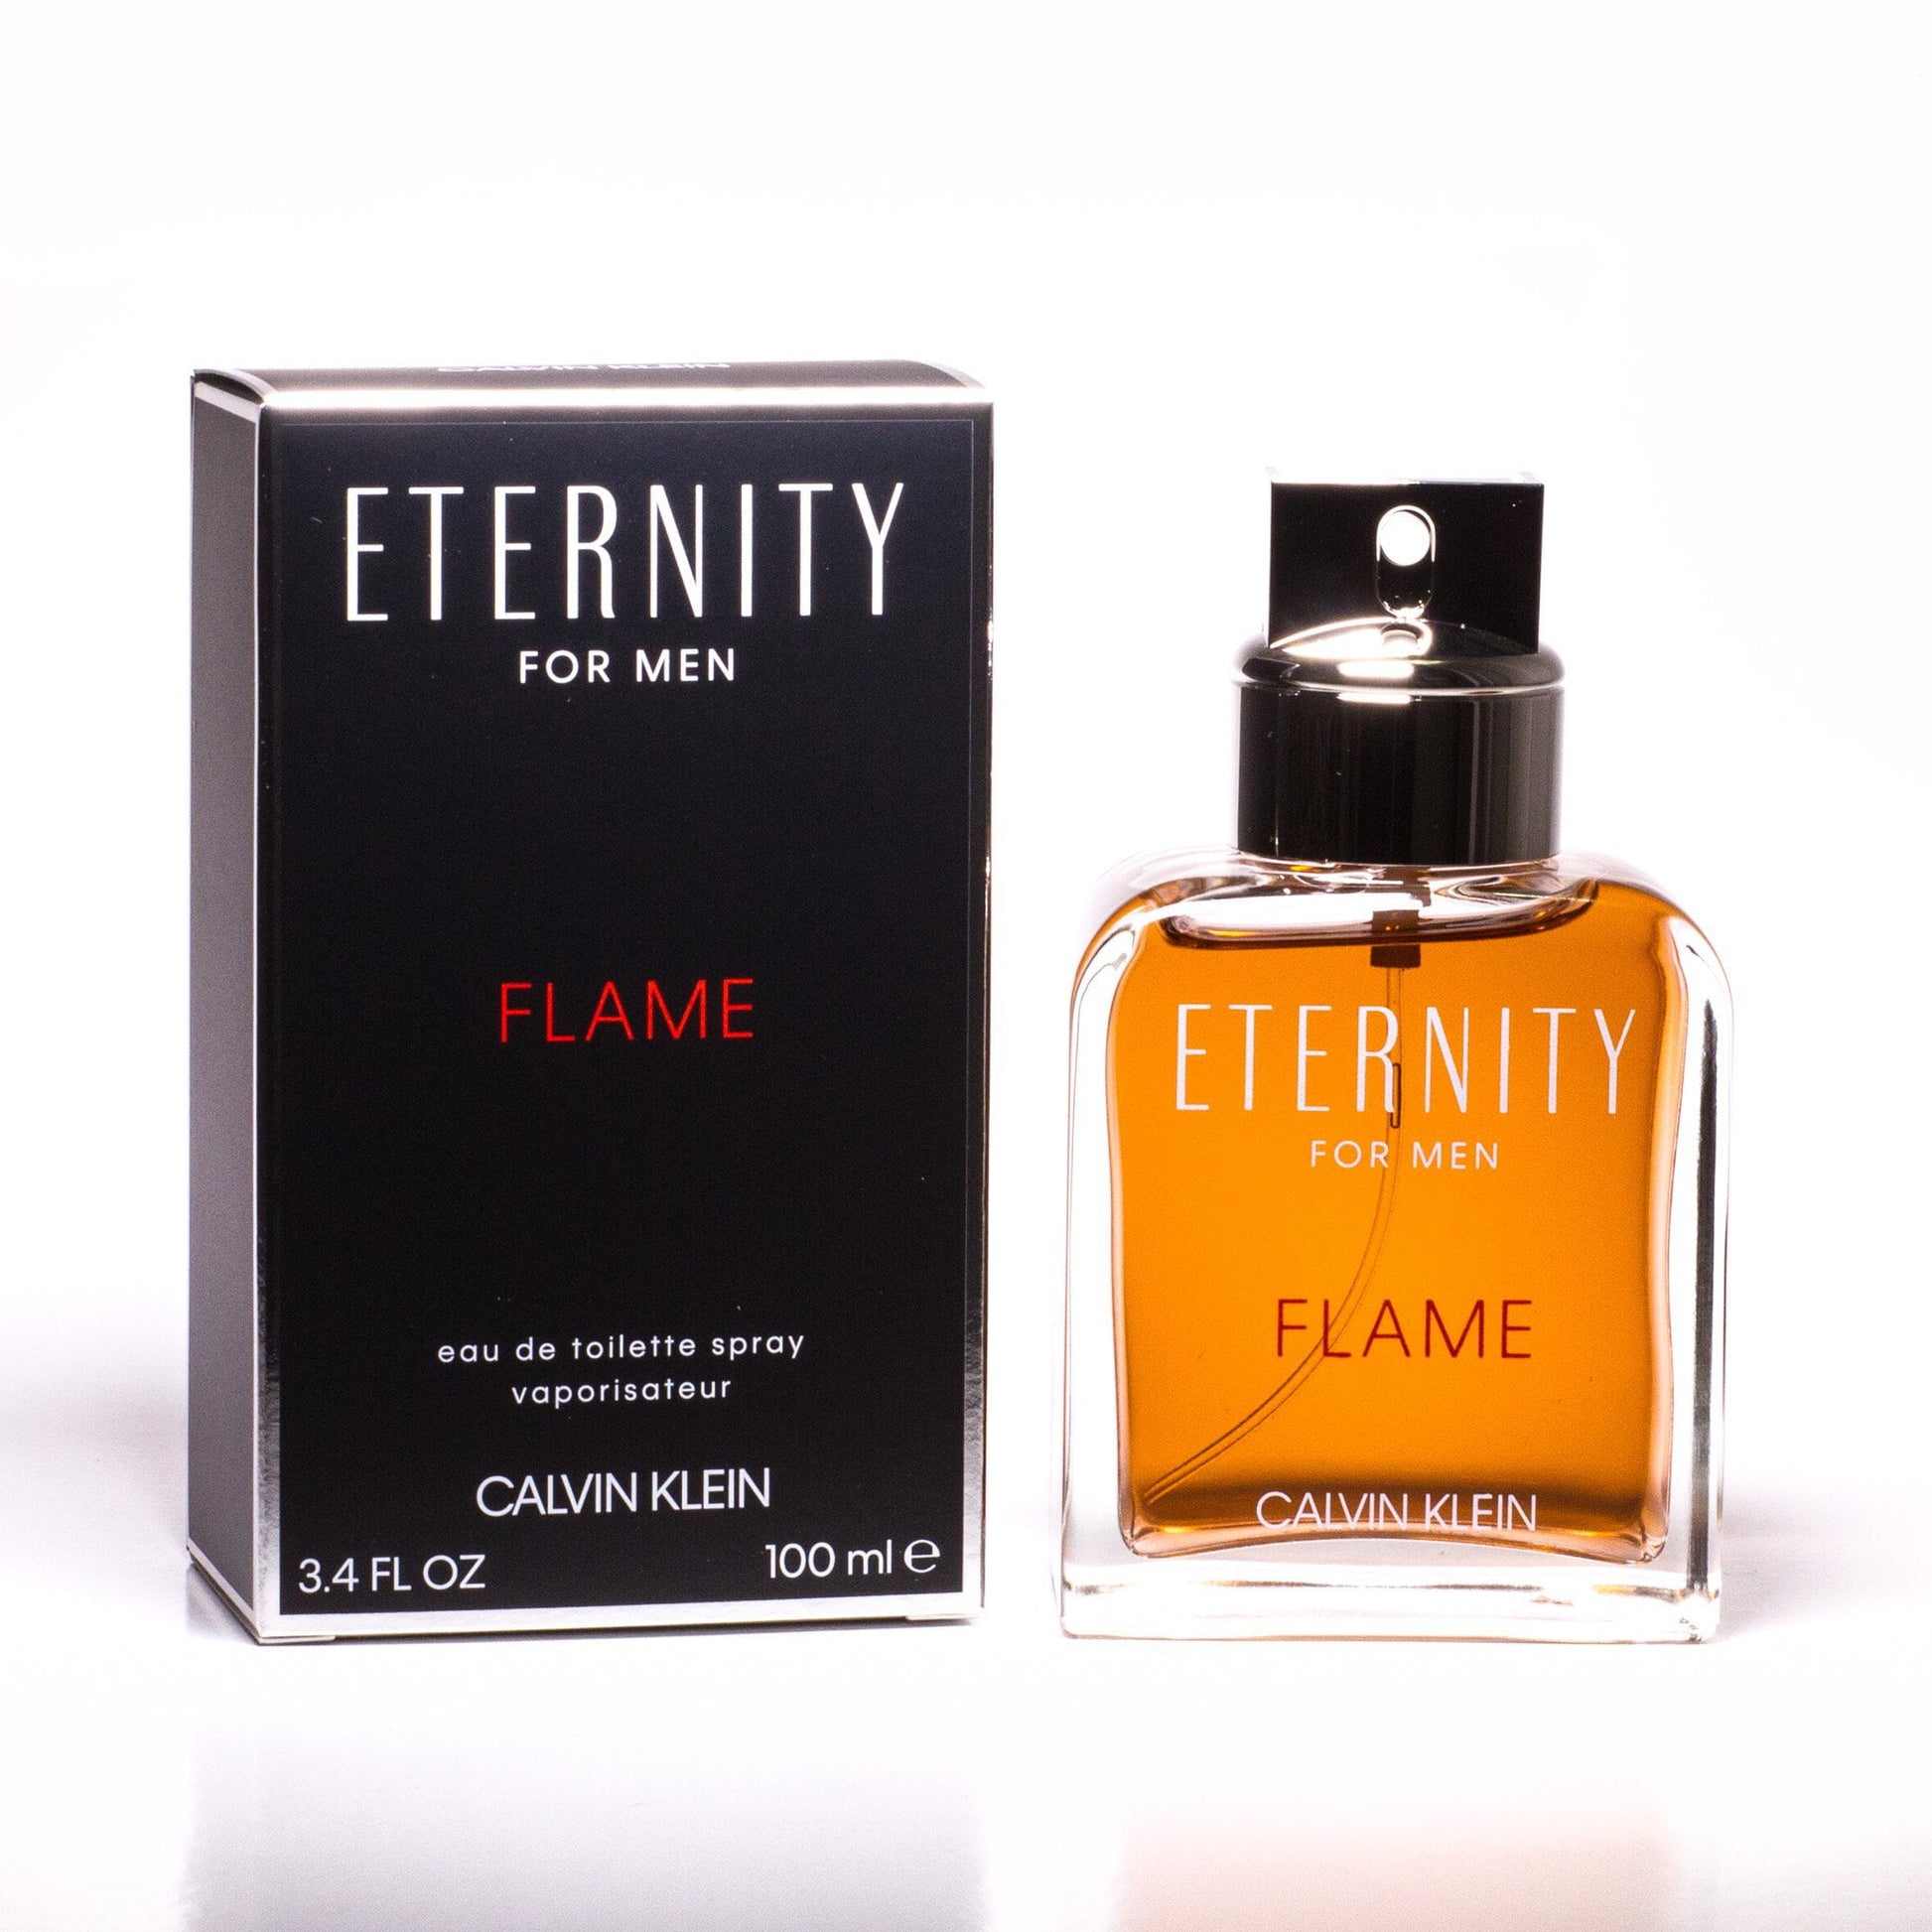 Flame Eau de Toilette Spray for Men by Calvin Klein, Product image 1